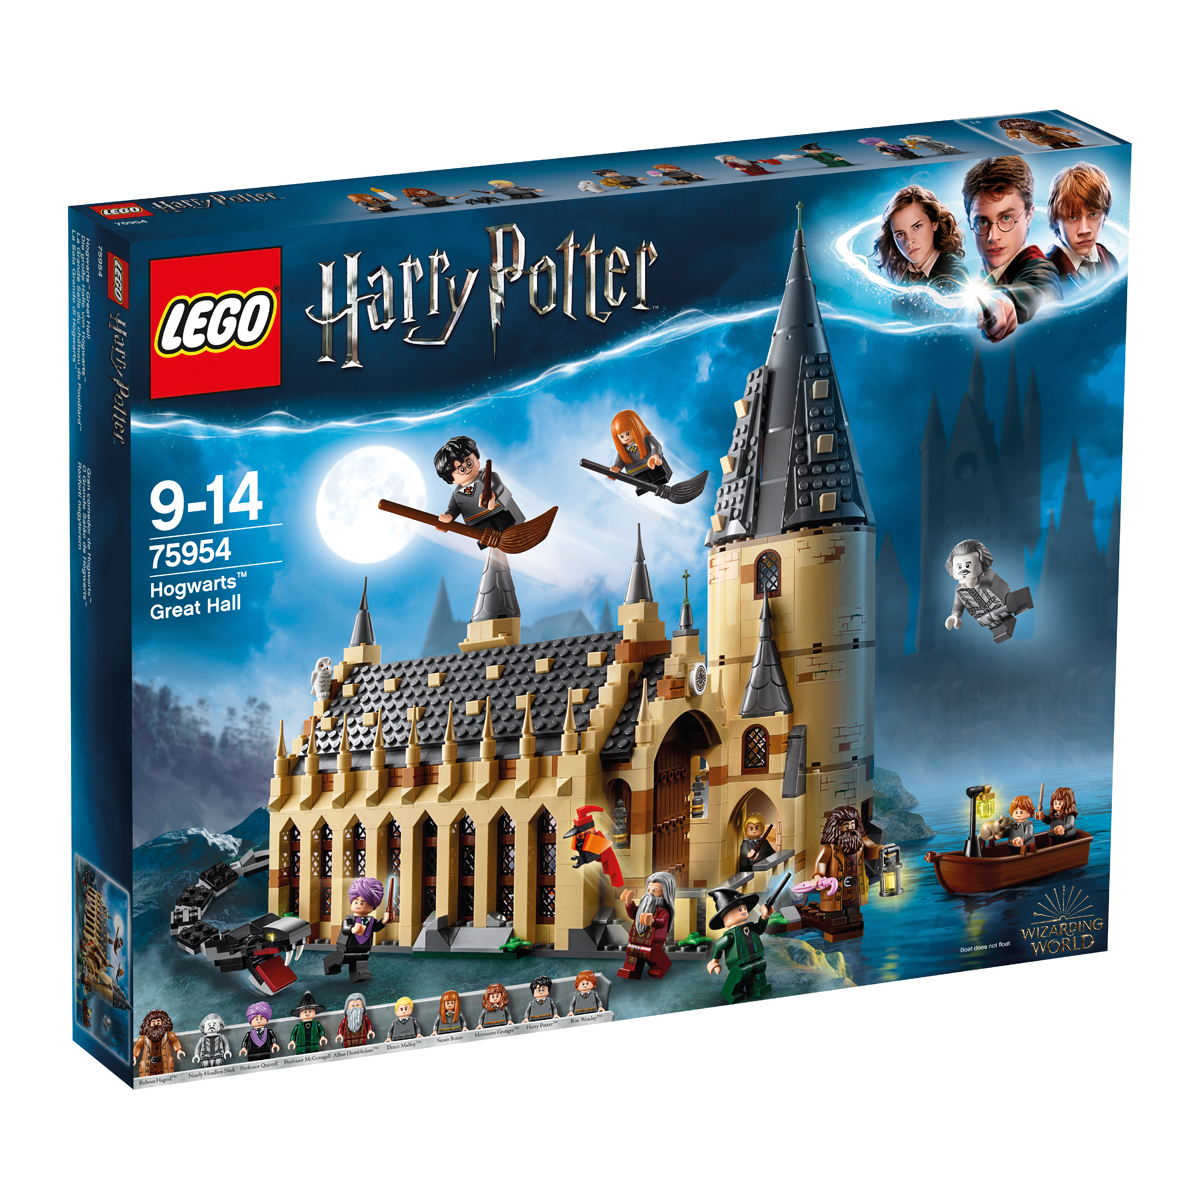 Lego Harry Potter, uno de los juguetes más vendidos en El Corte Inglés en la campaña de Navidad de 2018.